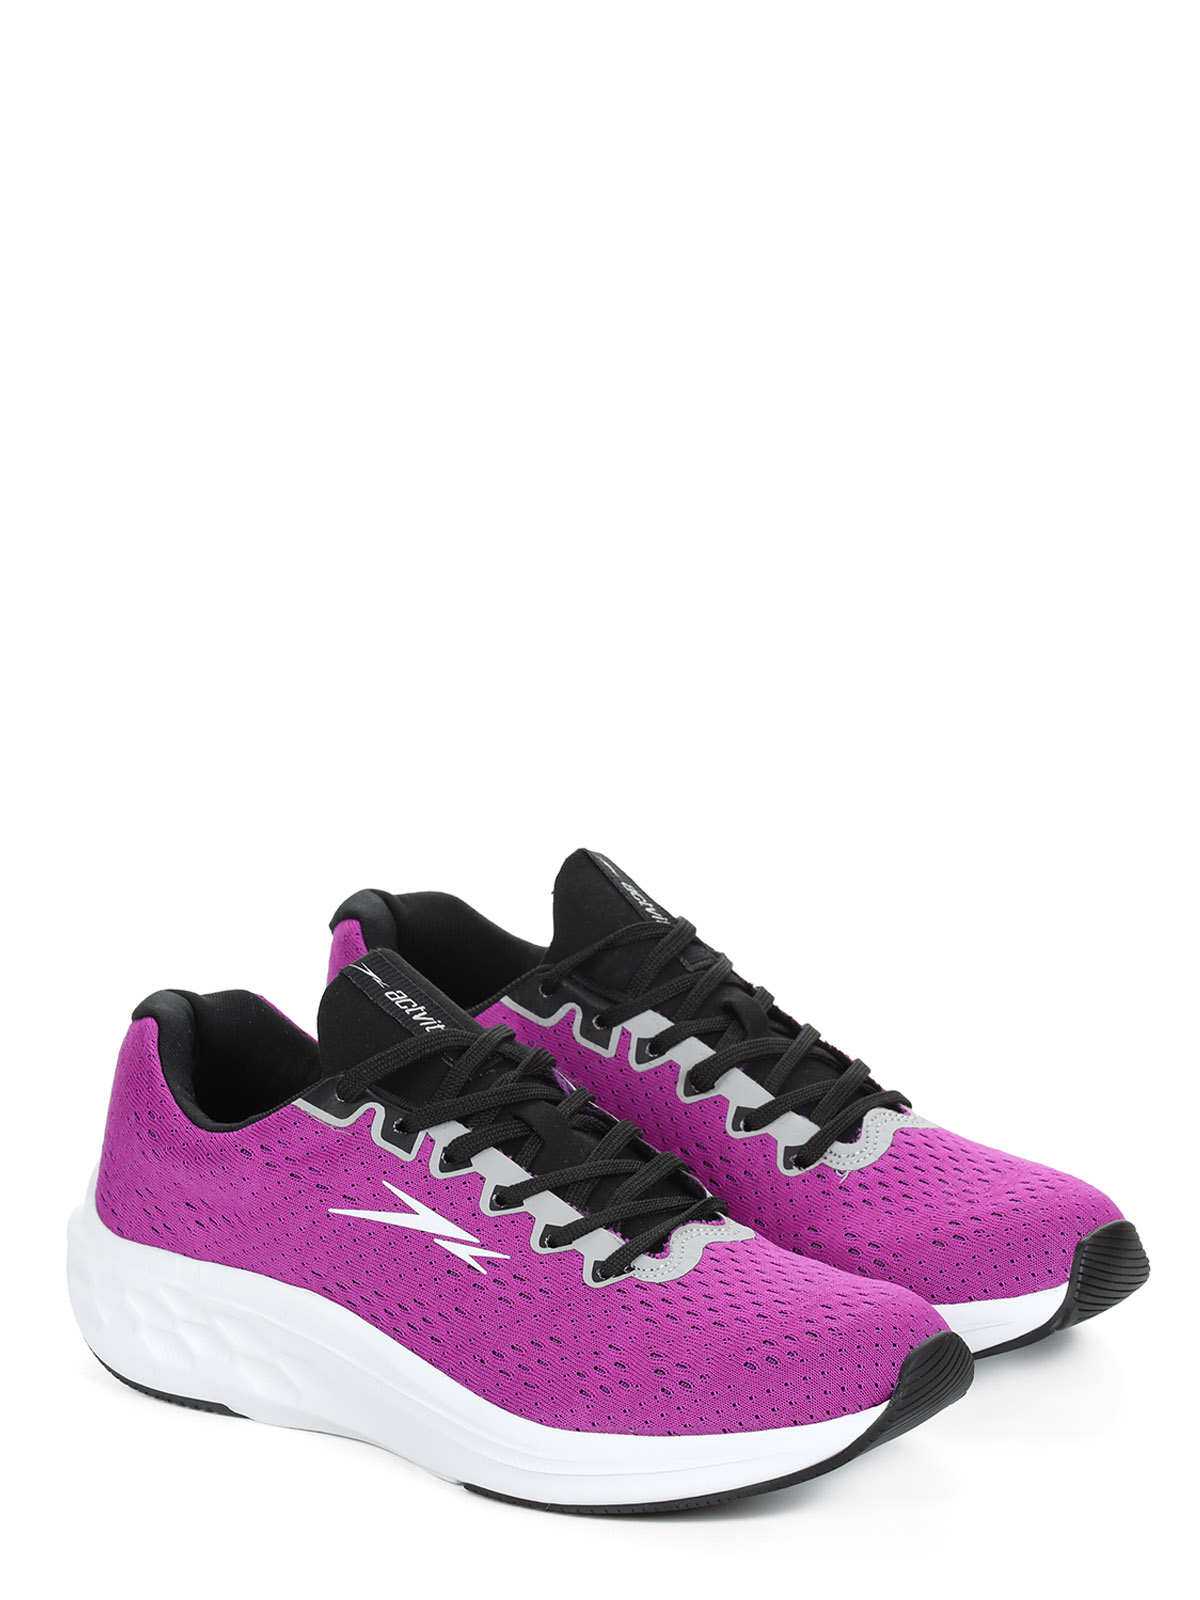 Спортивные кроссовки женские Actvitta 4822.310-1 фиолетовые 36 EU